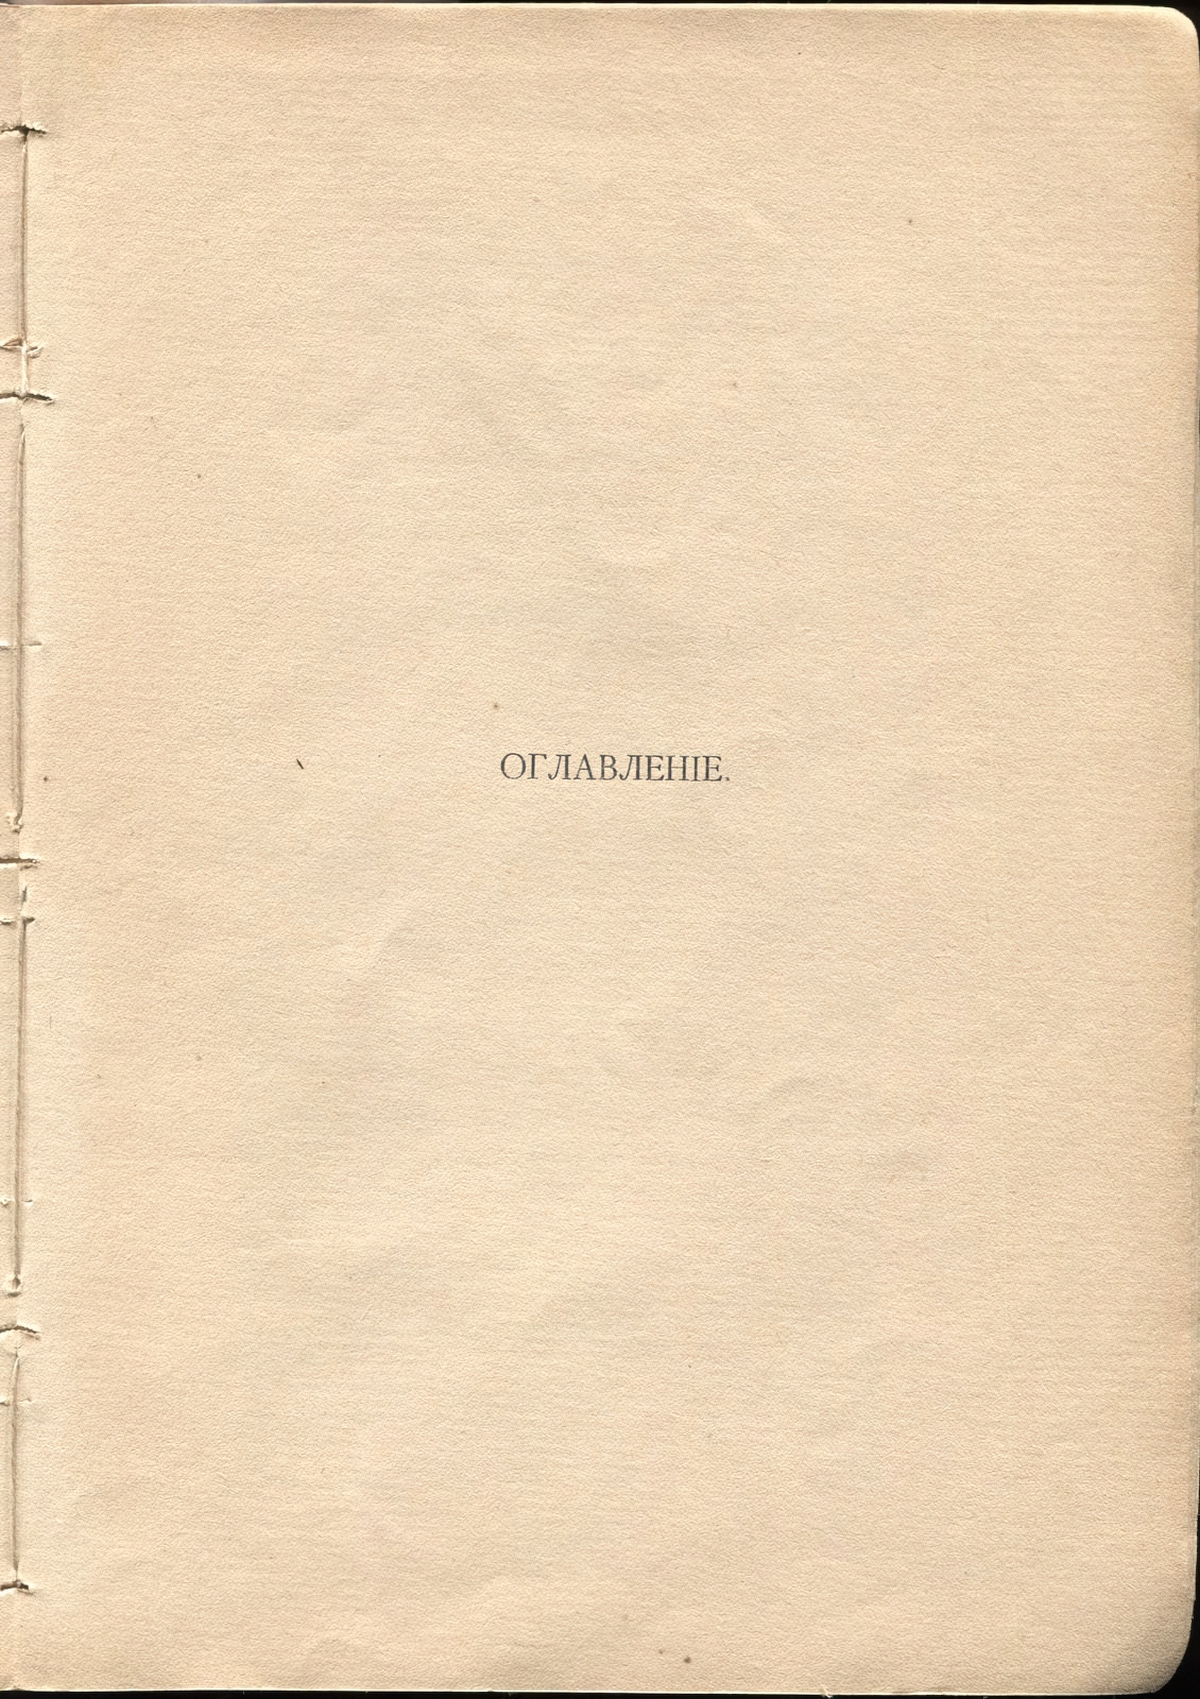 Жемчуга (1910). Концевой титульный лист 1